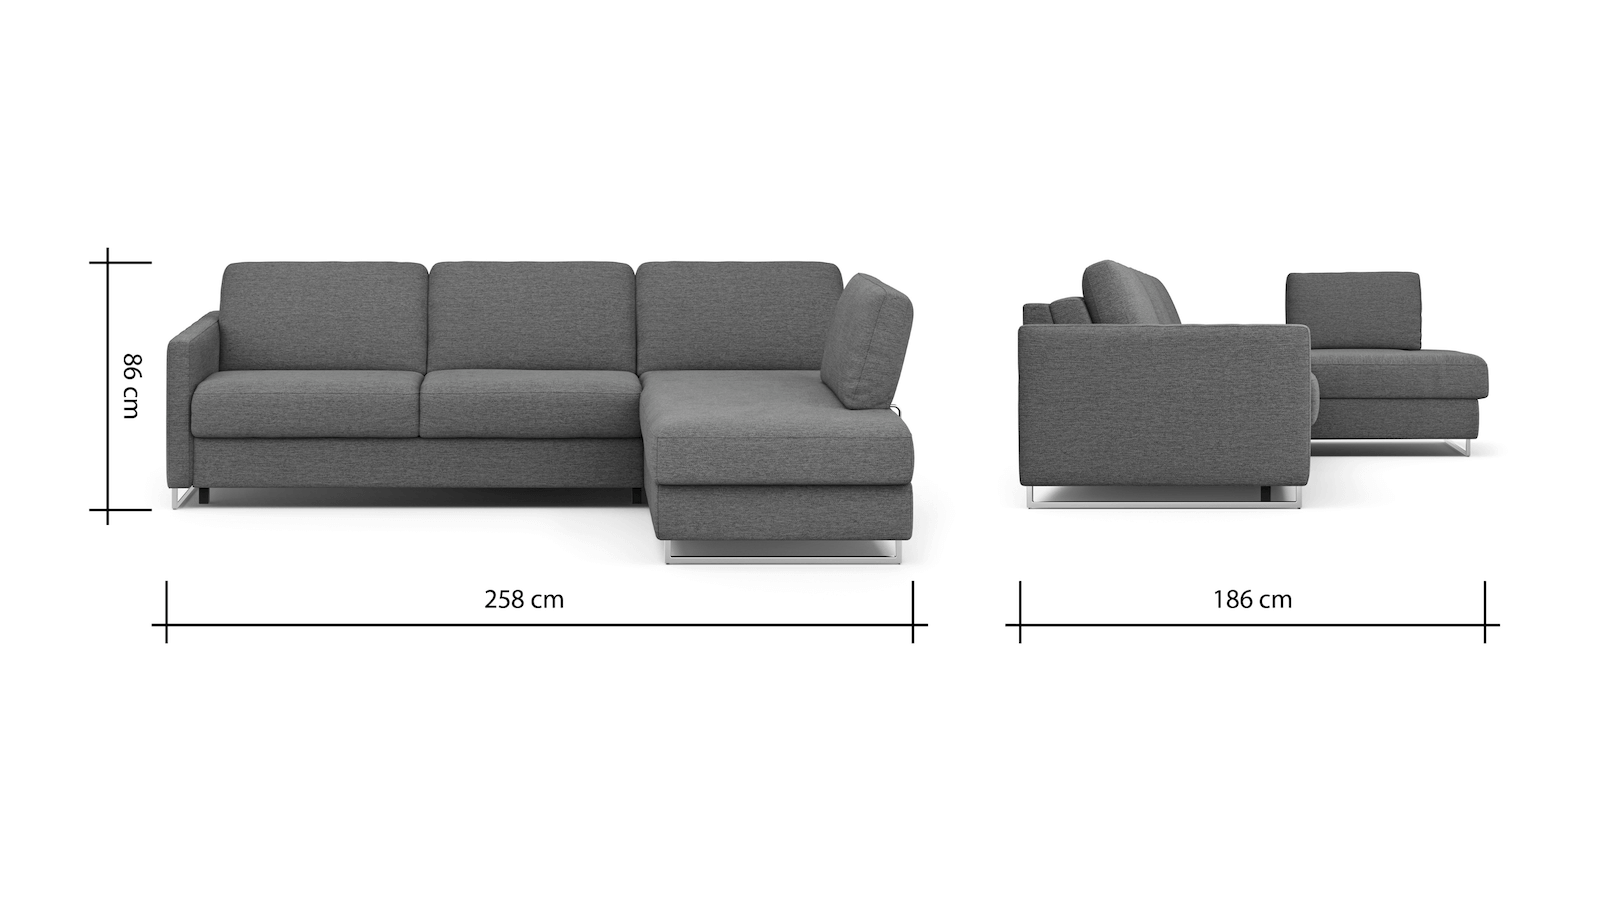 Ecksofa Nuoro - 2-Sitzer mit Longchair rechts inkl. Schlaffunktion und Bettkasten, Stoff, Beige